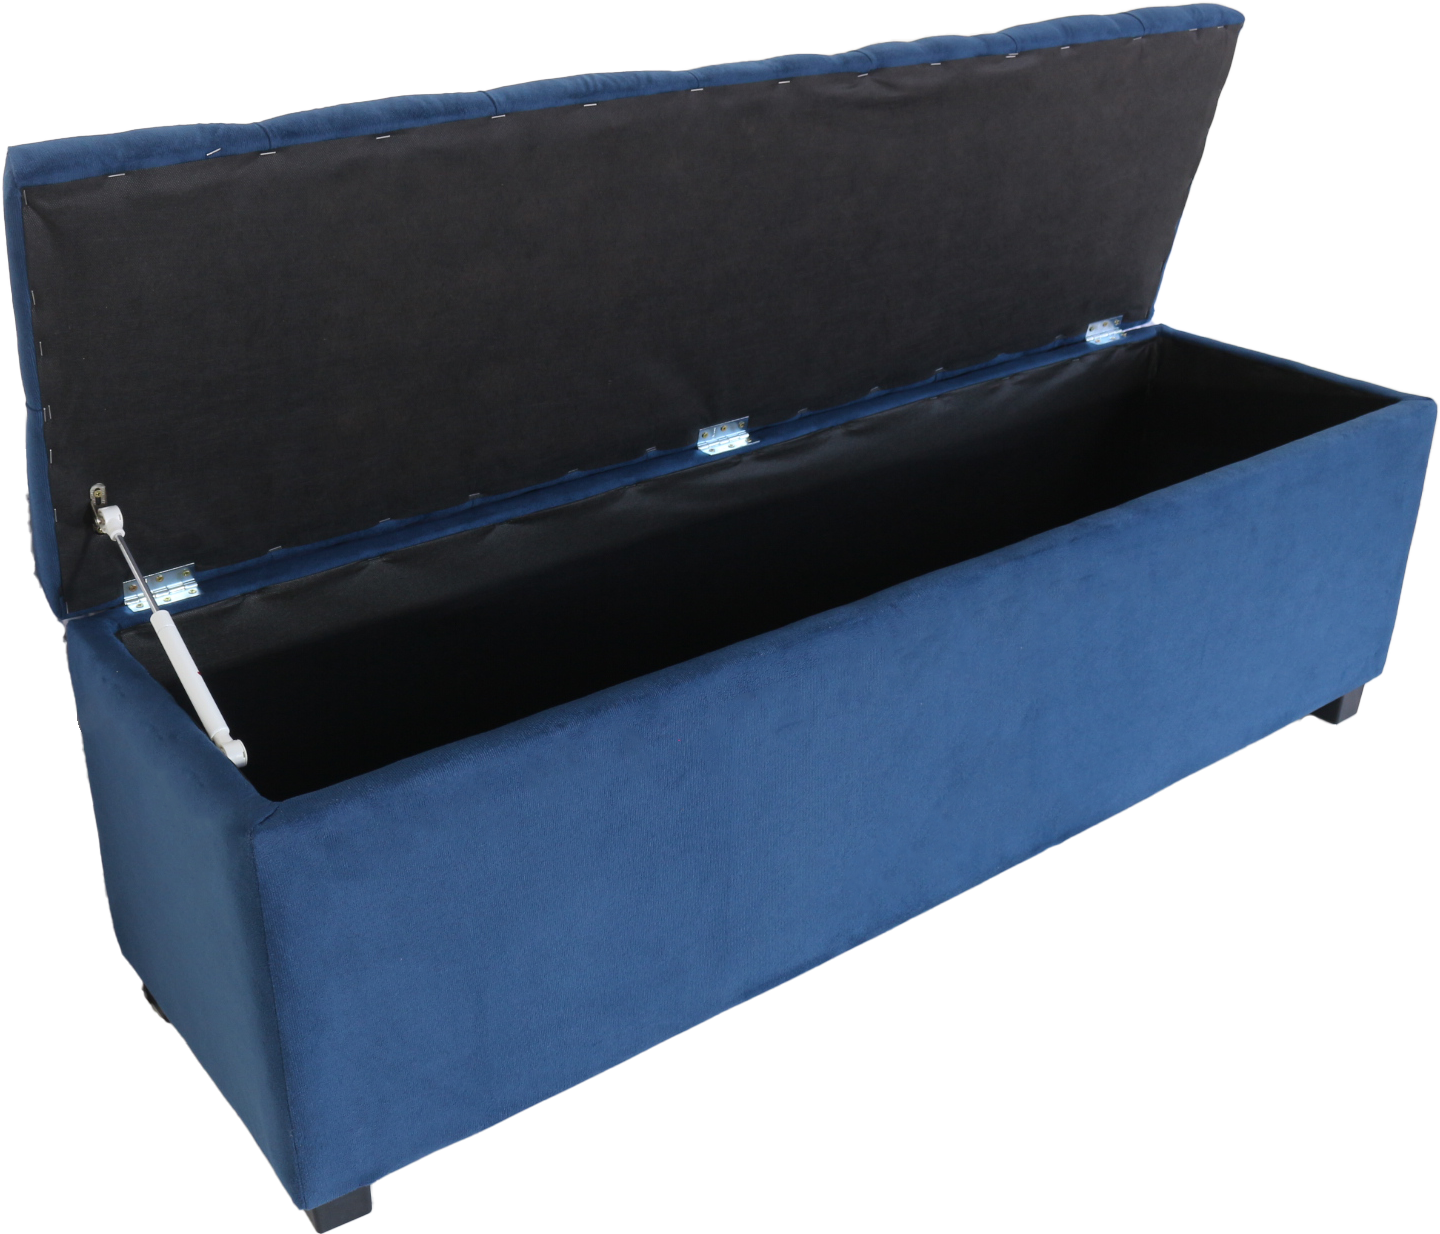 Puf Baú Recamier Estofado Casal Azul Marinho 140x40x45cm Produto Com Alta Qualidade e Conforto - 1